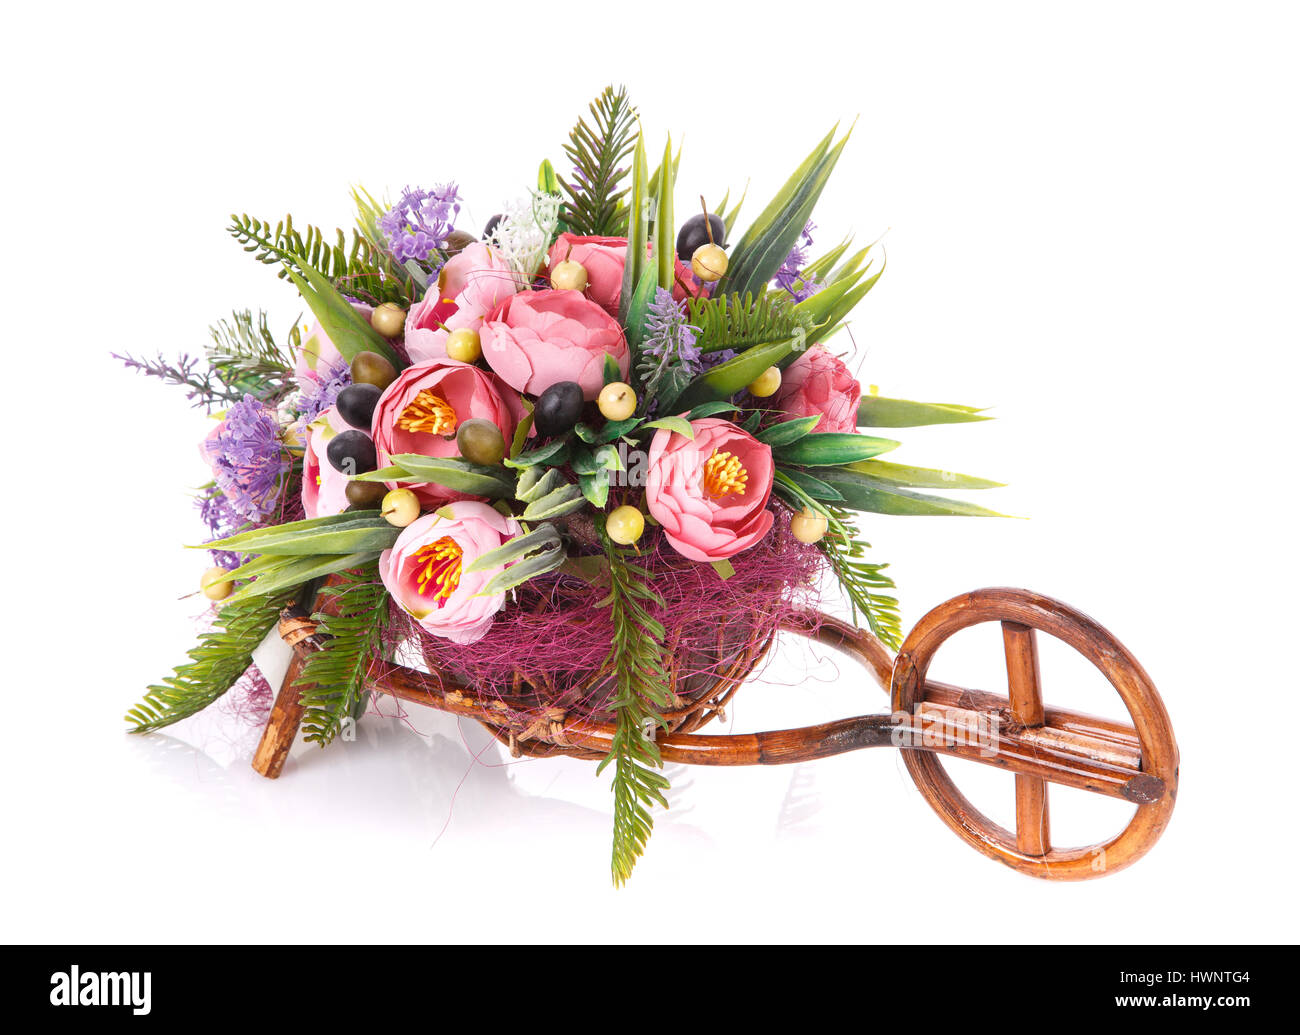 Arrangement de fleurs pour la décoration de fête Banque D'Images